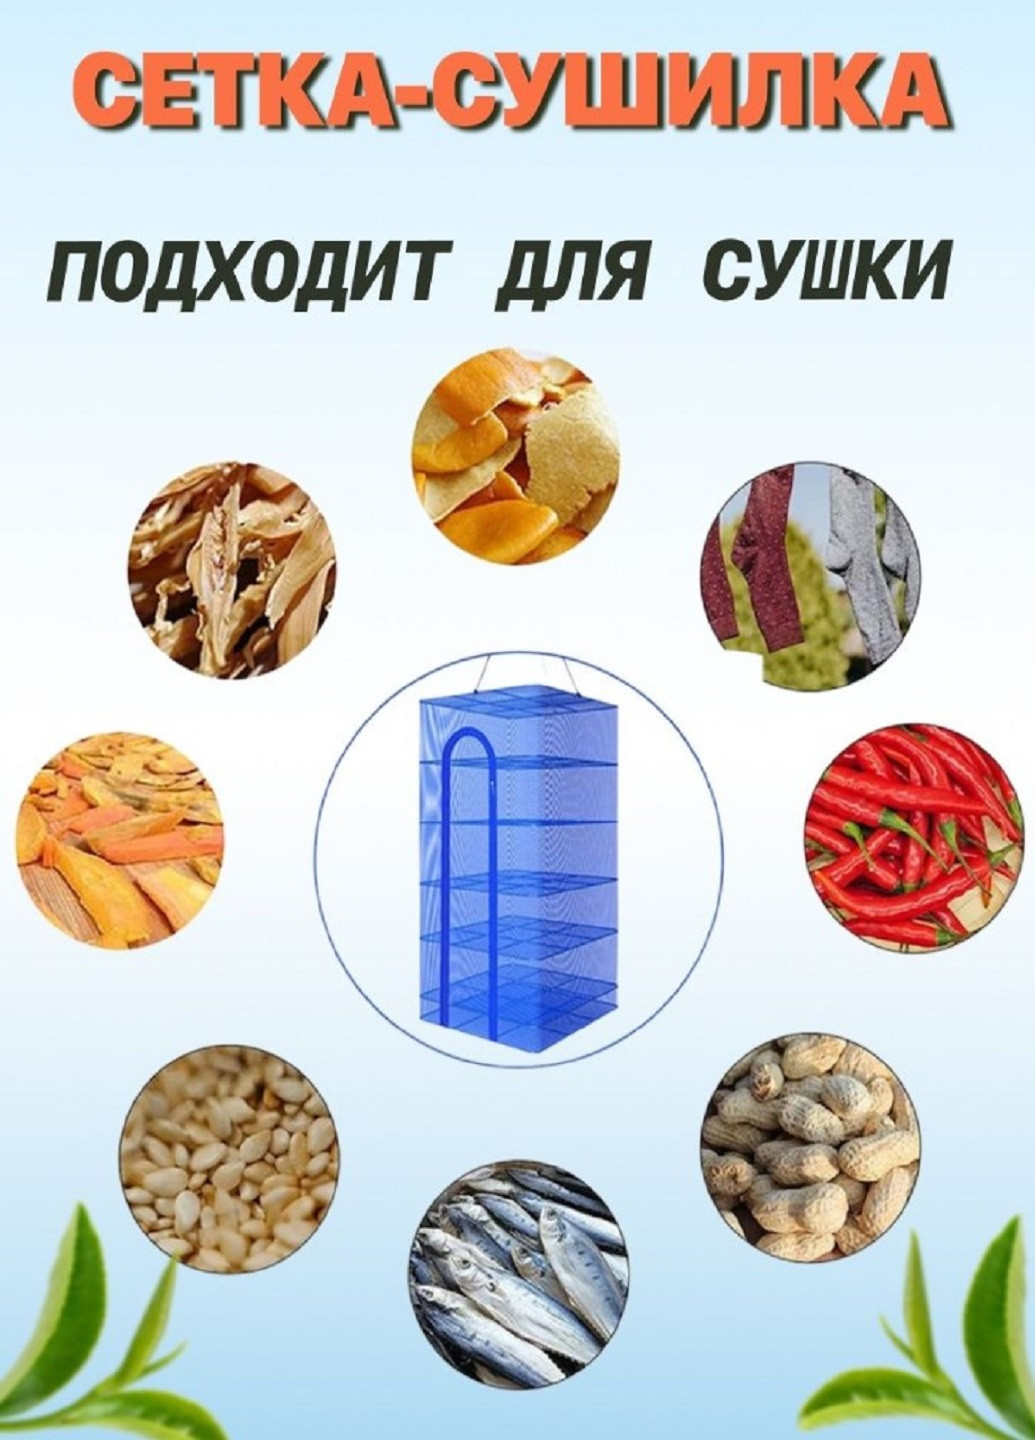 Універсальна підвісна сушка сітка для риби, фруктів, грибів з блискавкою 5+1 ярусів VTech (262006819)